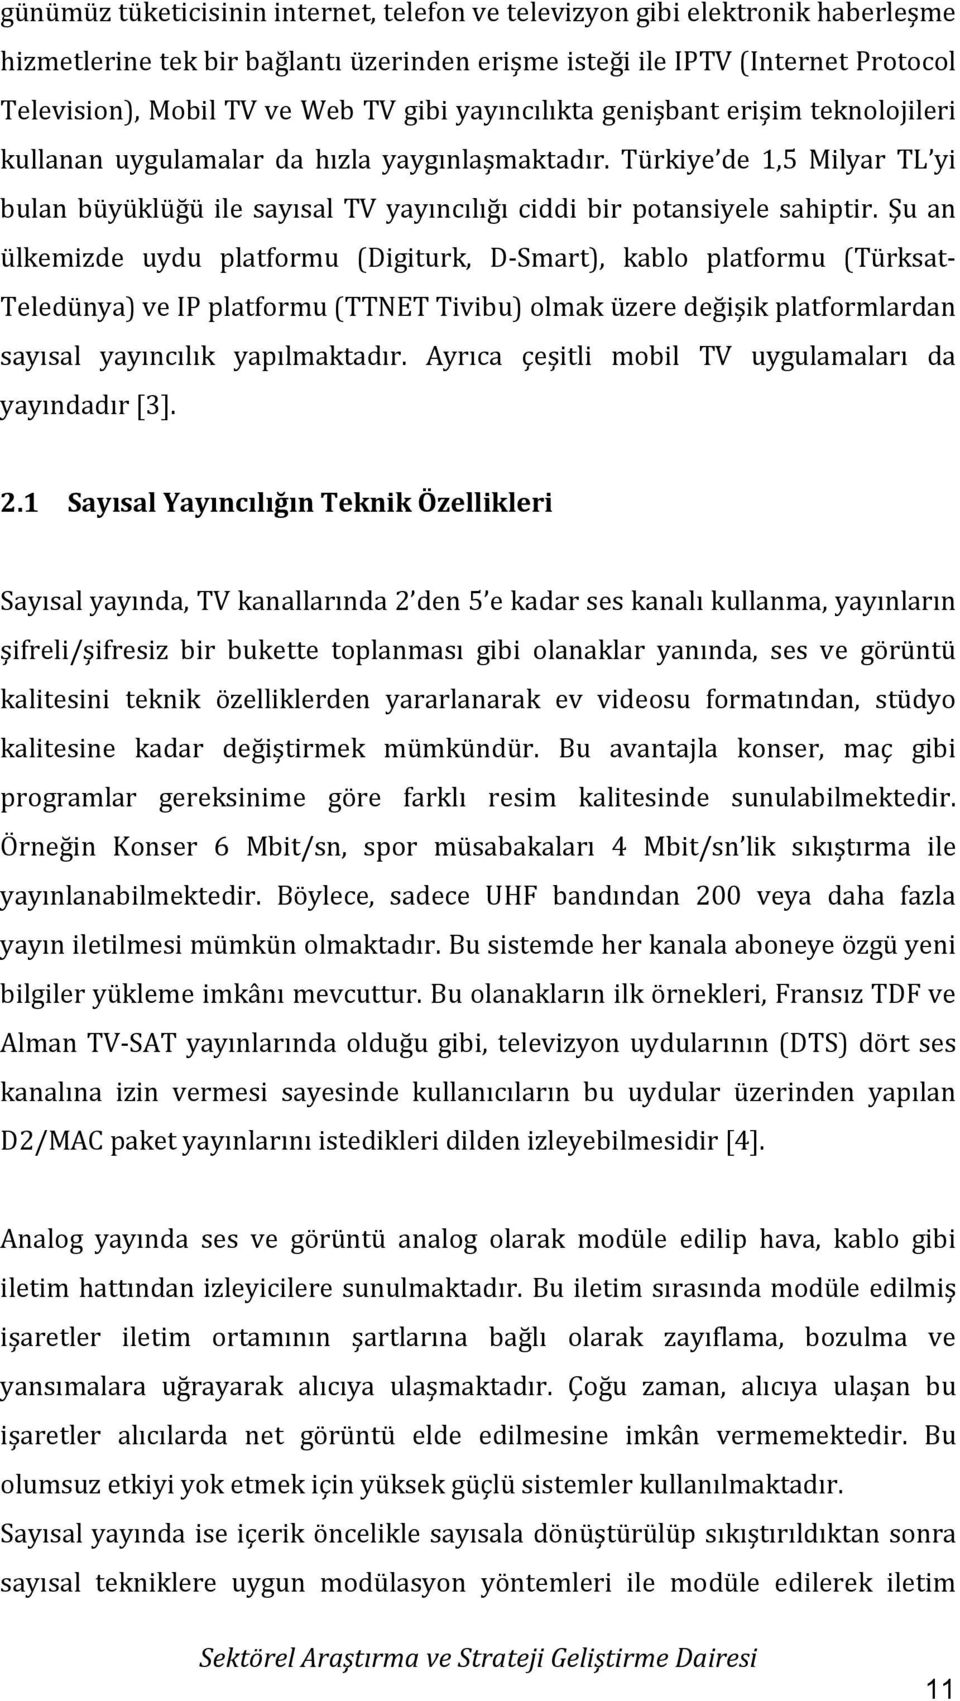 Şu an ülkemizde uydu platformu (Digiturk, D-Smart), kablo platformu (Türksat- Teledünya) ve IP platformu (TTNET Tivibu) olmak üzere değişik platformlardan sayısal yayıncılık yapılmaktadır.